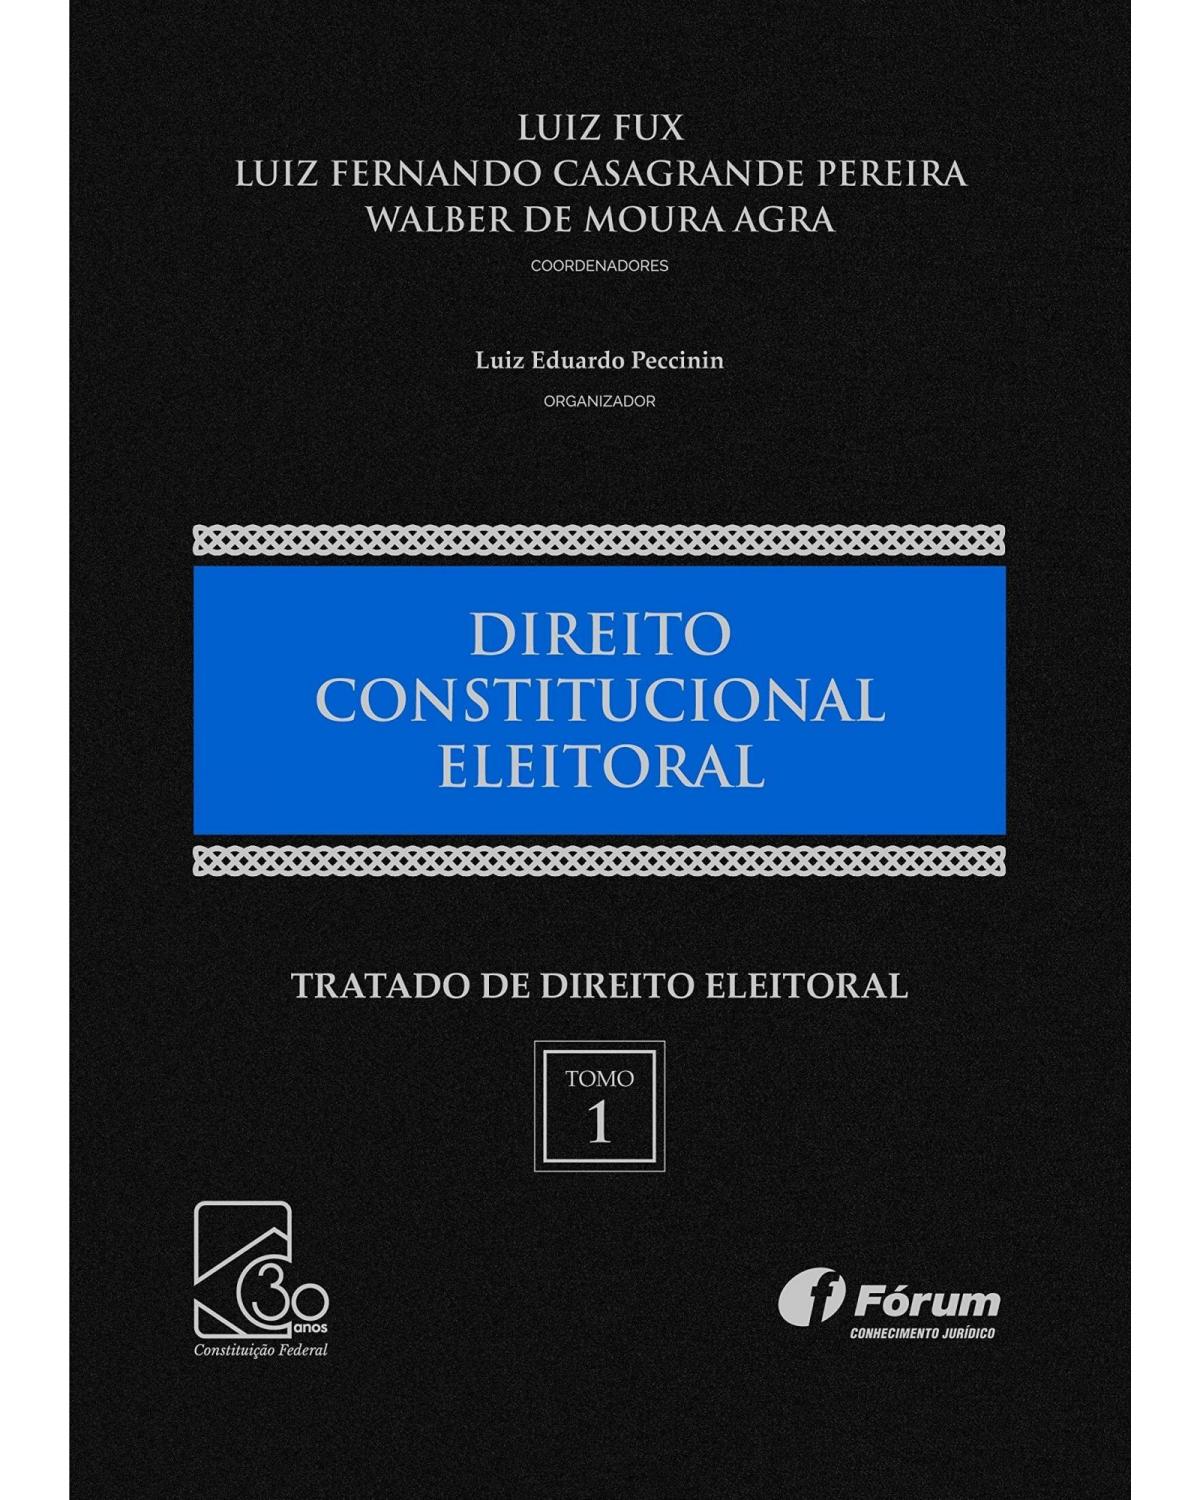 Tratado de direito eleitoral: Direito constitucional eleitoral - Volume 1